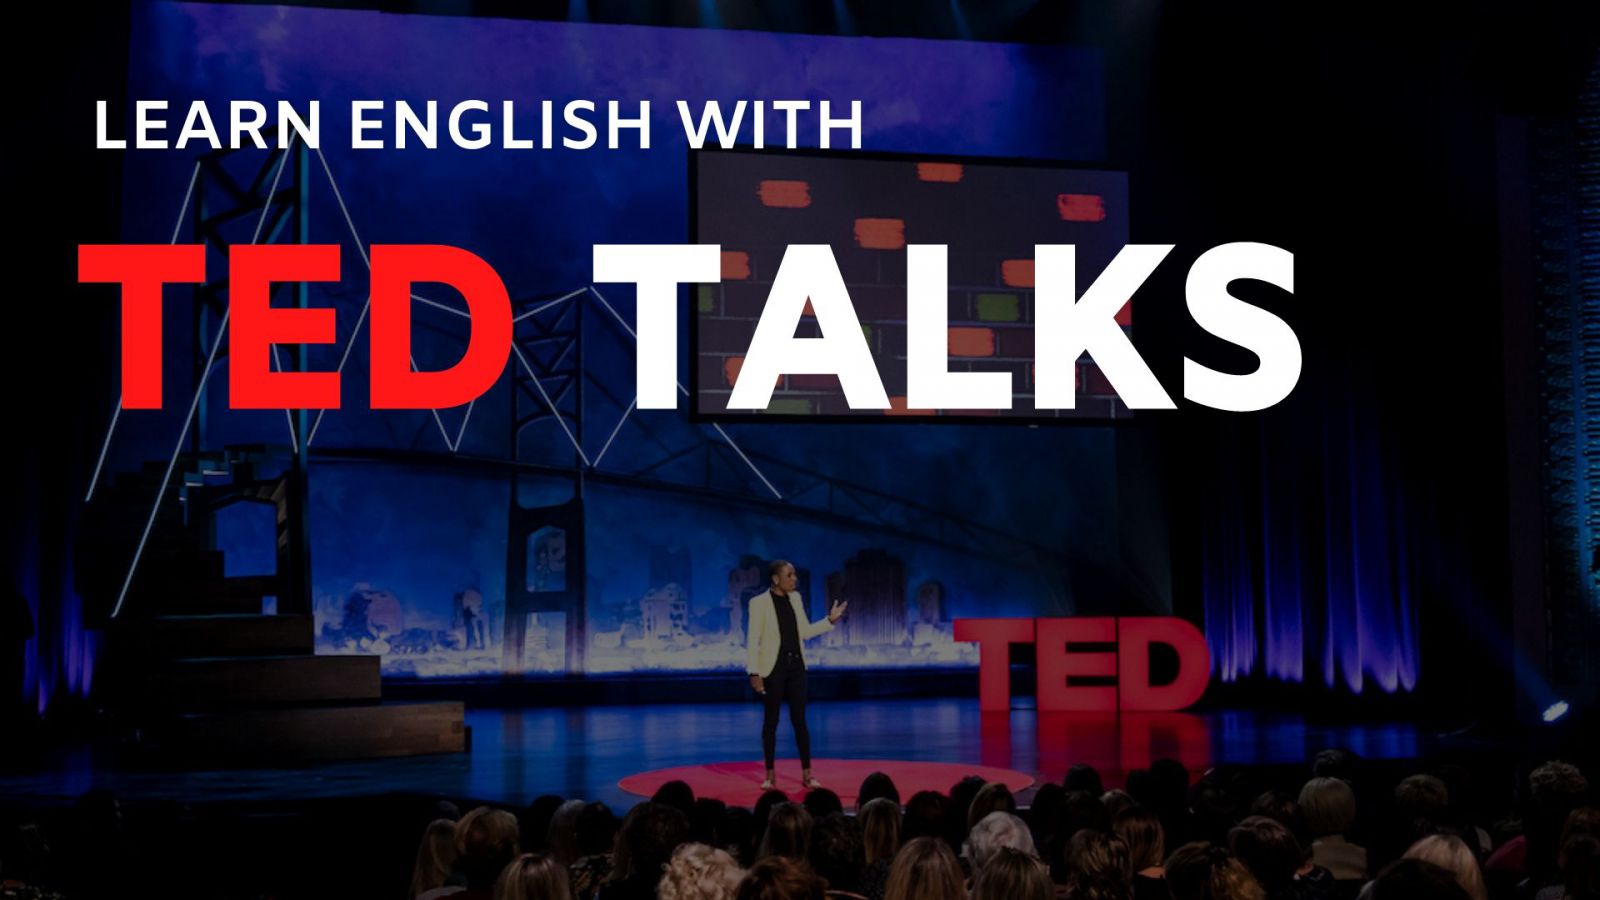 Ted talk là gì? 4 bài học bổ ích của ted talk